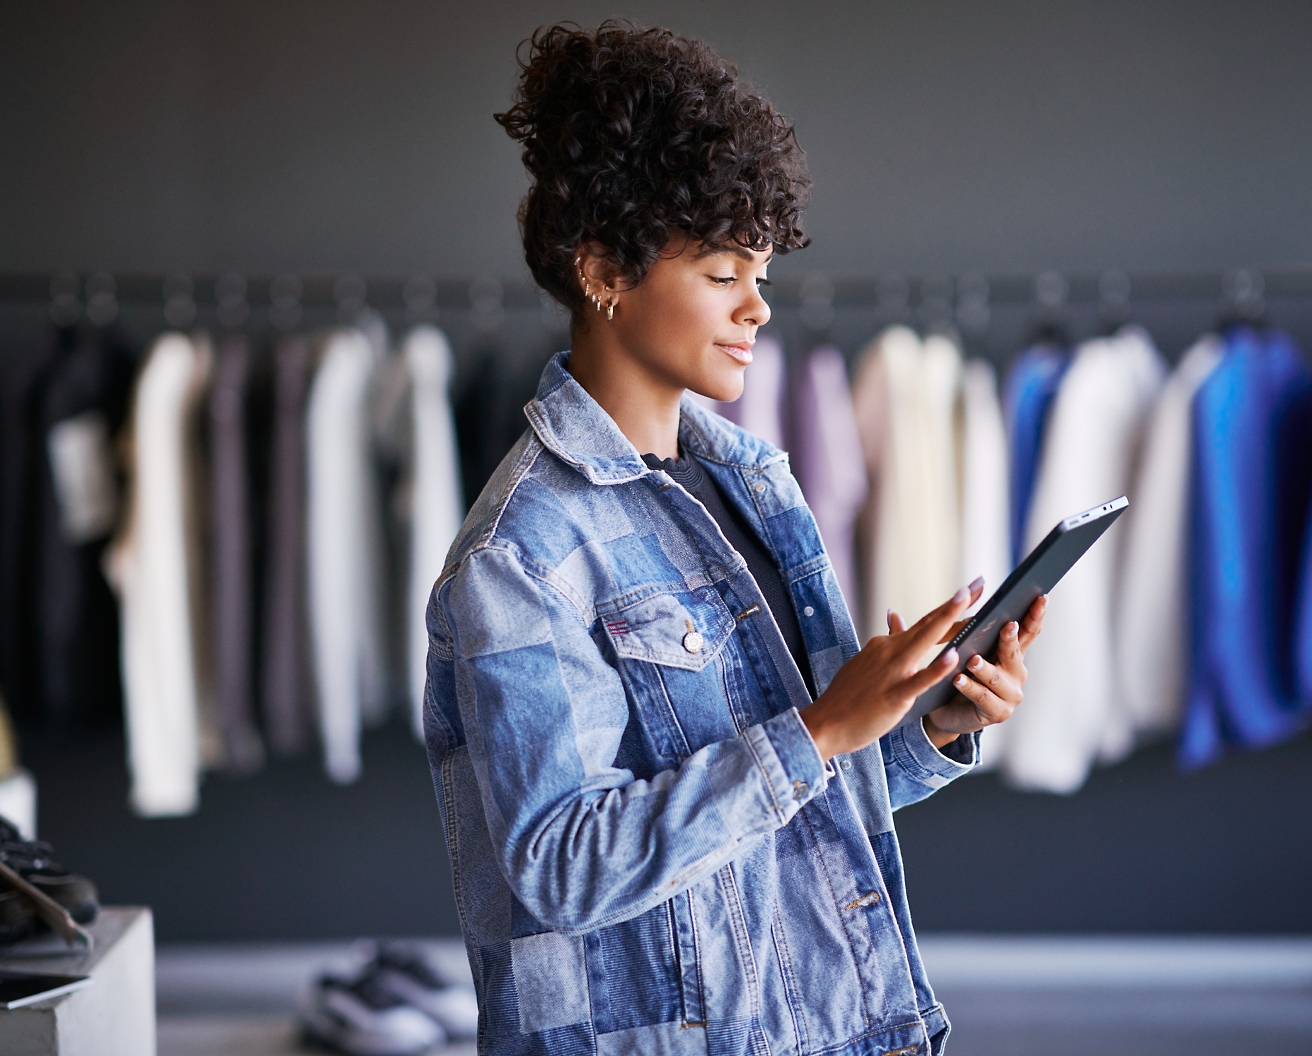 Une femme vêtue d’une veste en jean utilise une tablette dans un magasin de vêtements